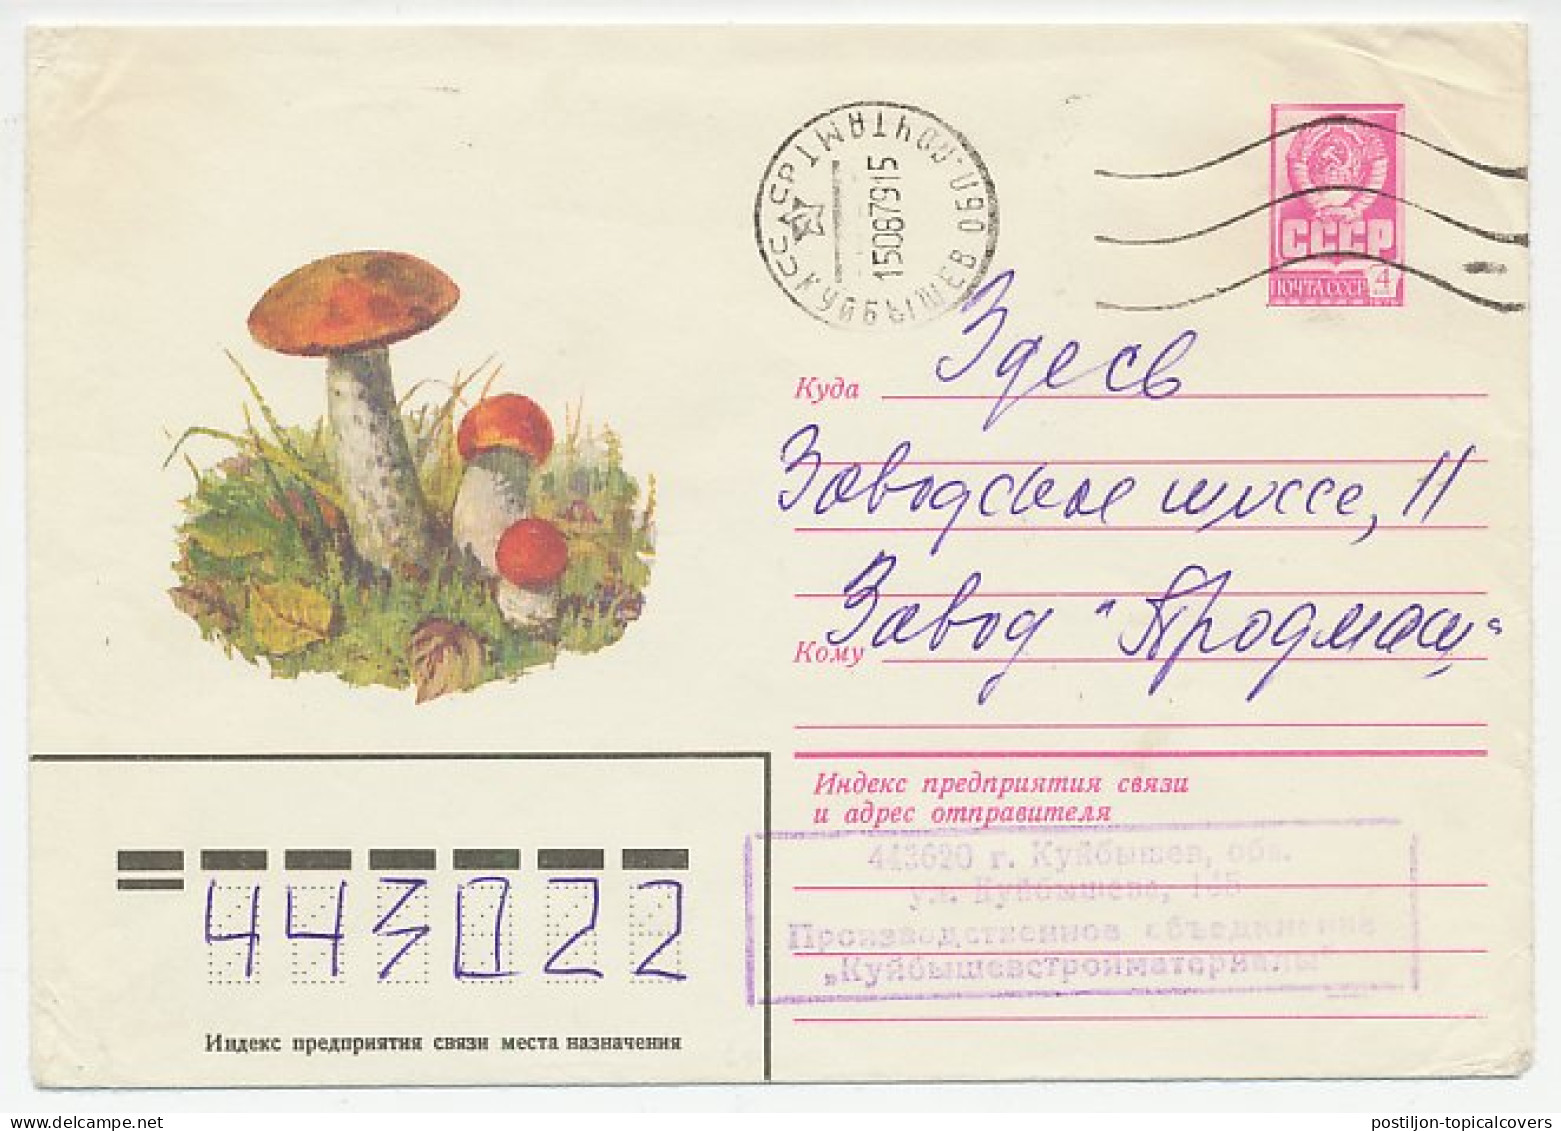 Postal Stationery Soviet Union 1979 Mushroom - Mushrooms